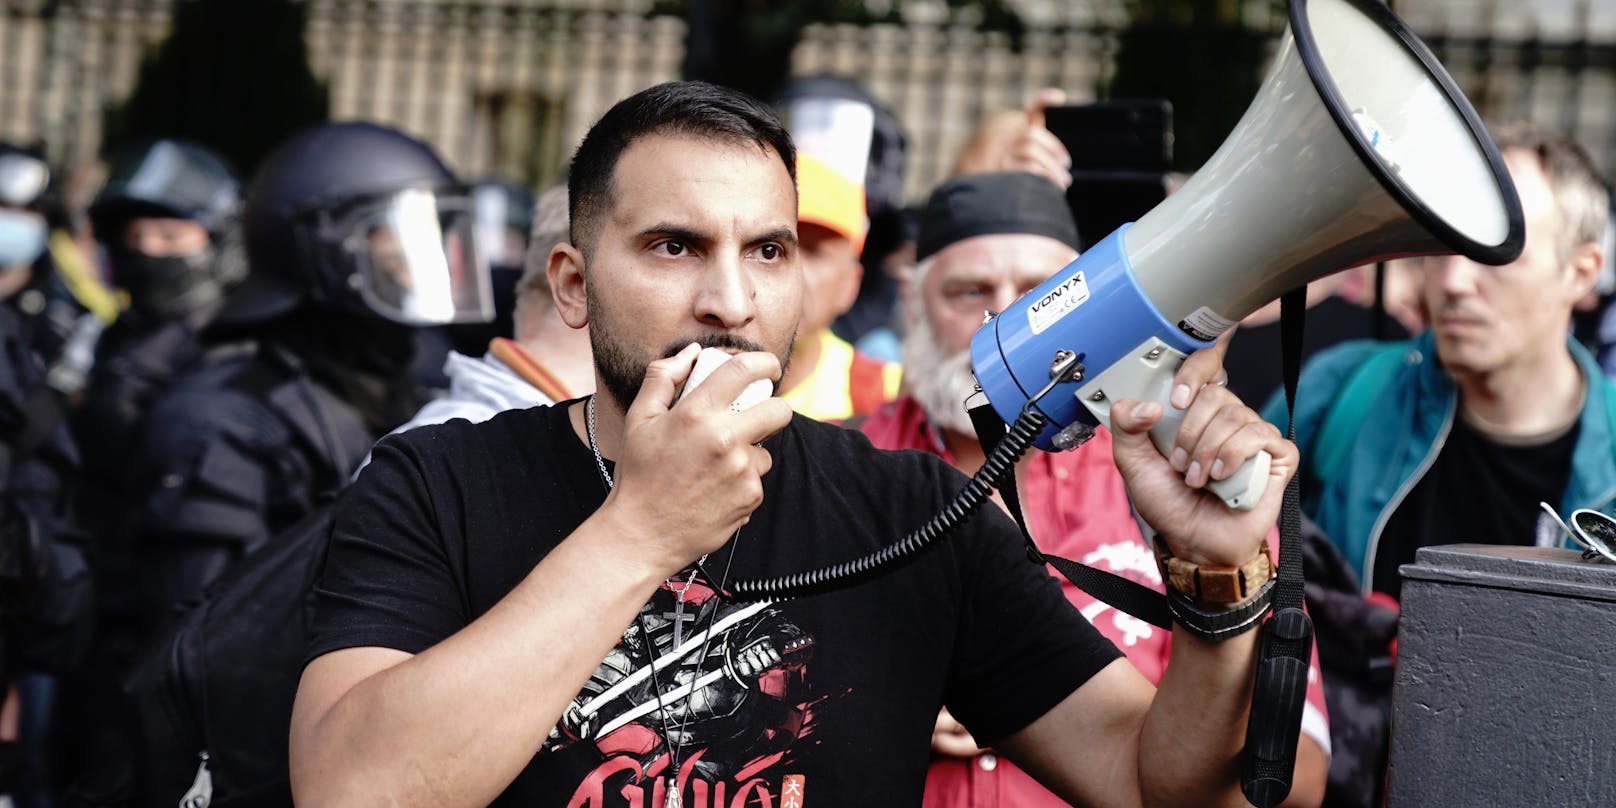 Der vegane Koch und Corona-Zweifler Attila Hildmann wurde am 29. August im Zuge einer Anti-Corona-Demo in Berlin von der Polizei abgeführt.